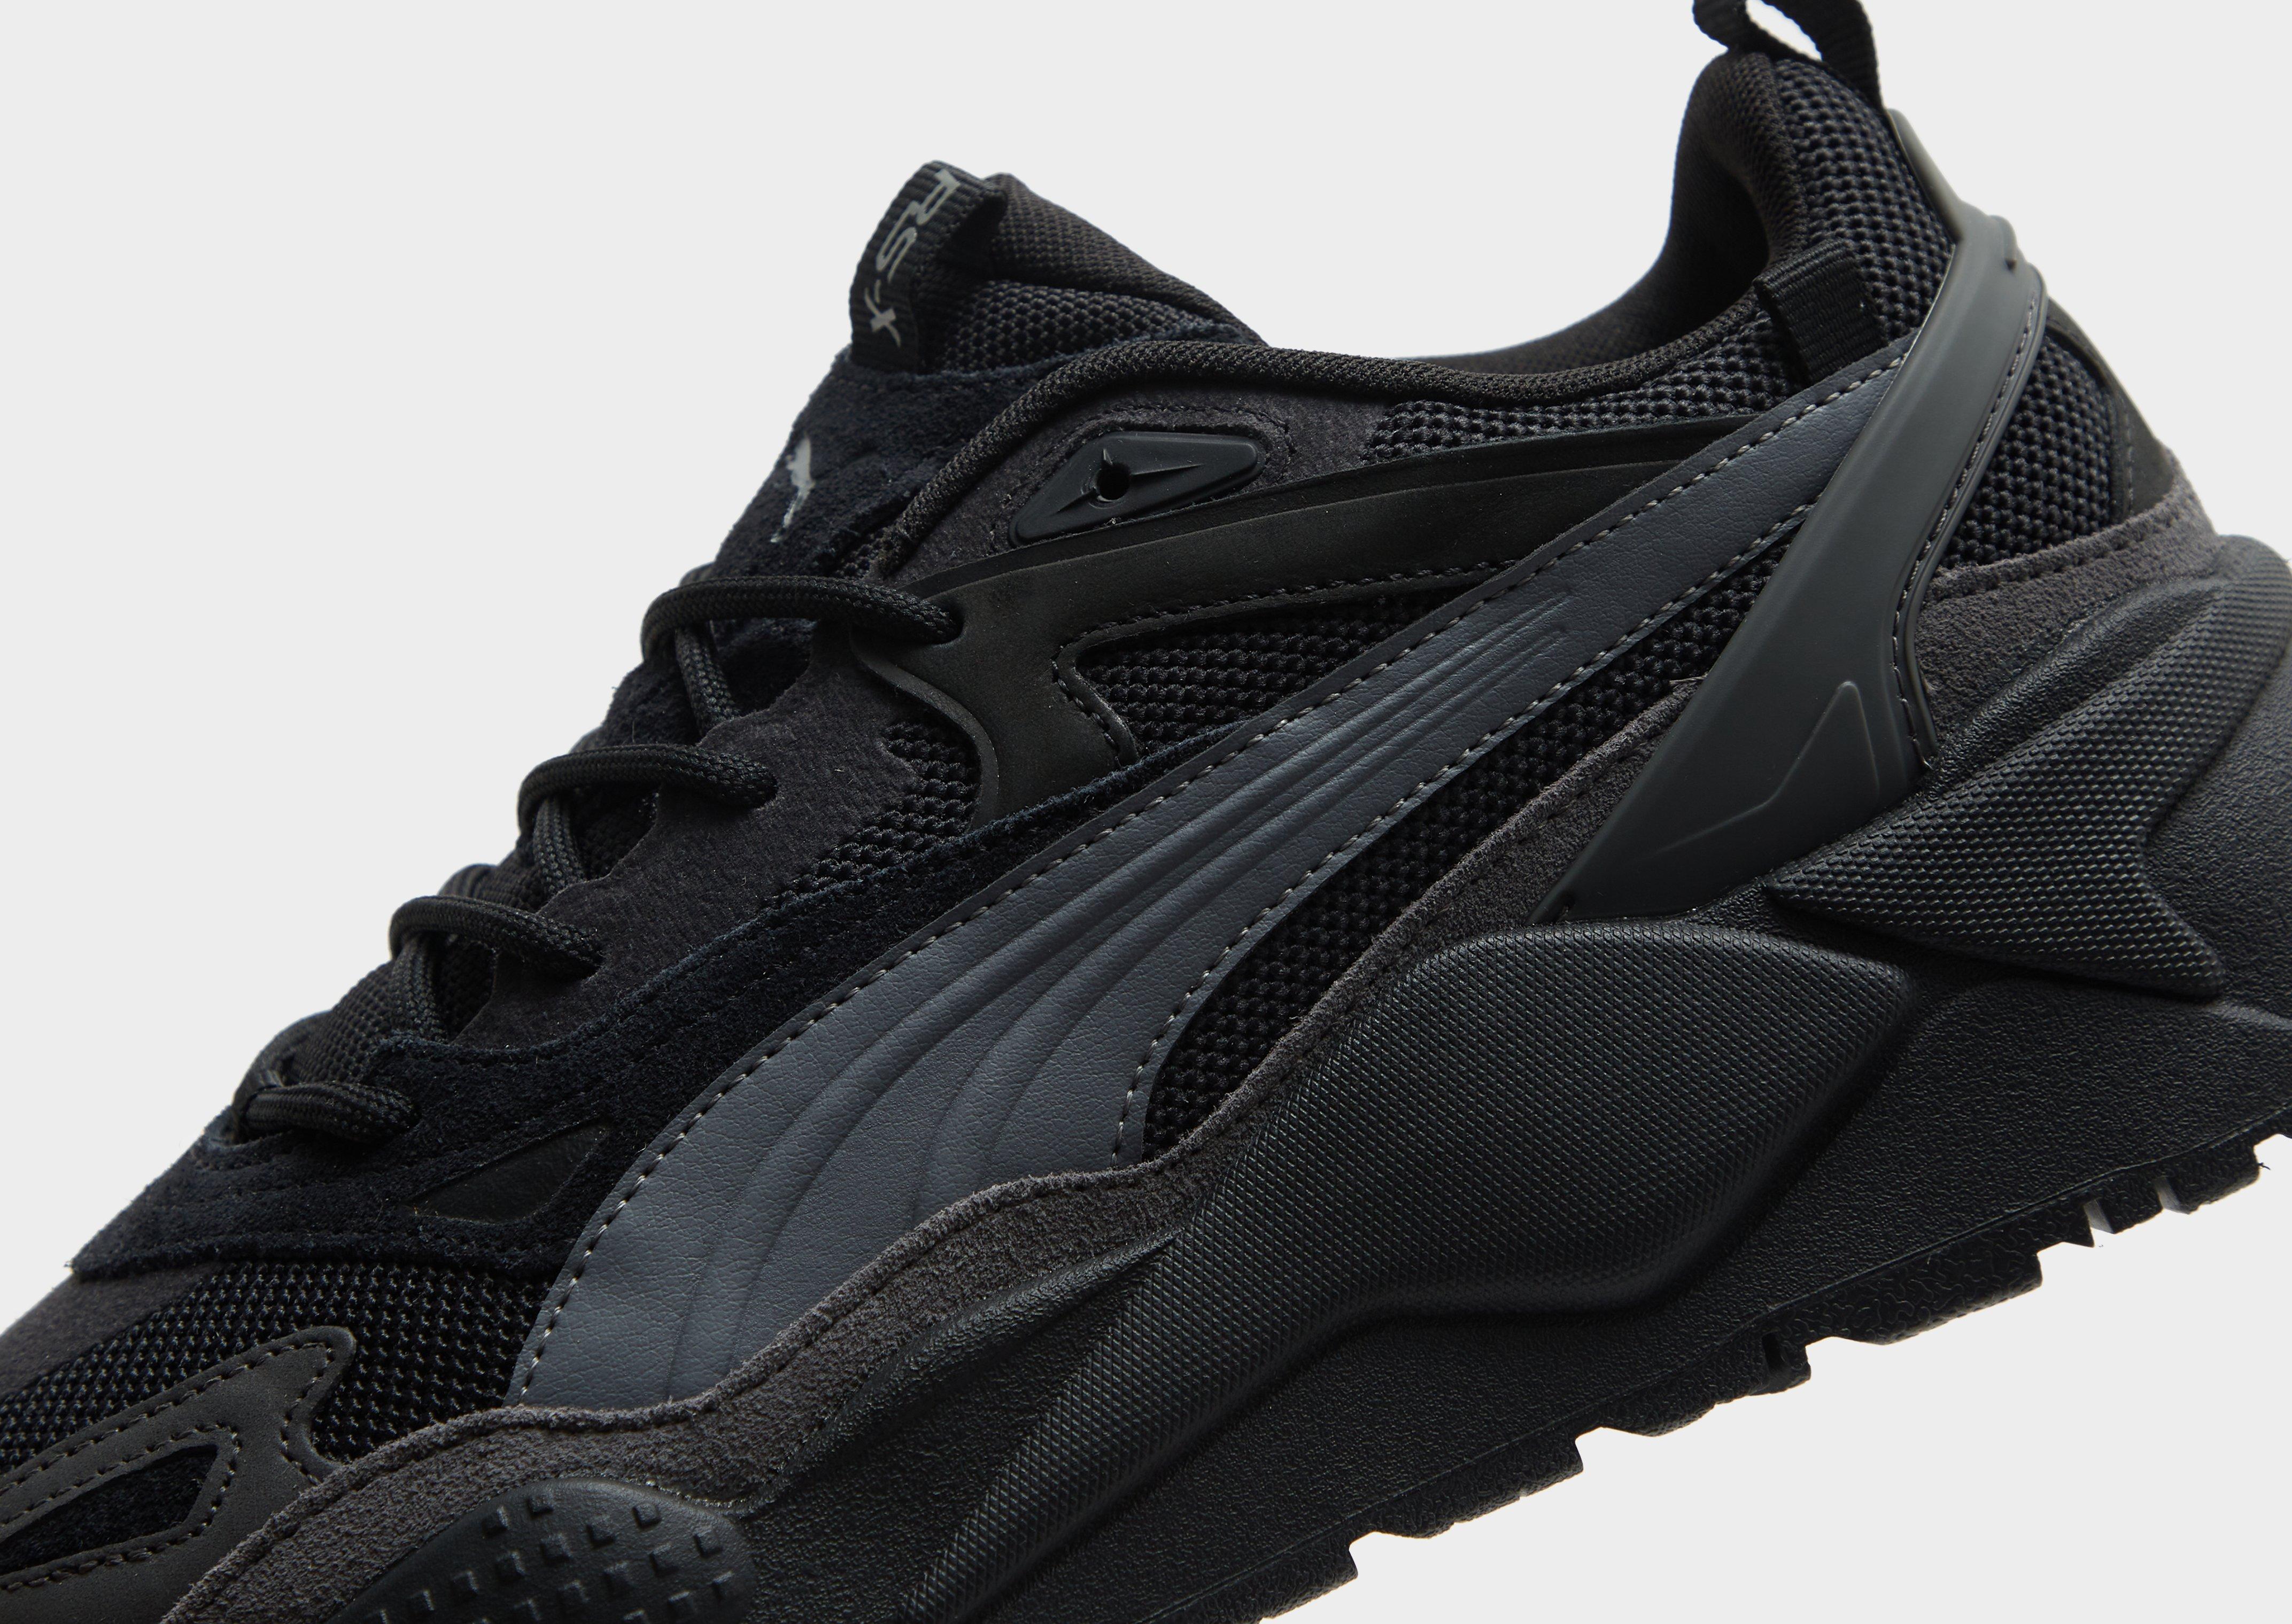 Zapatillas de deporte negras reflectantes RS-X Efekt de PUMA-Negro